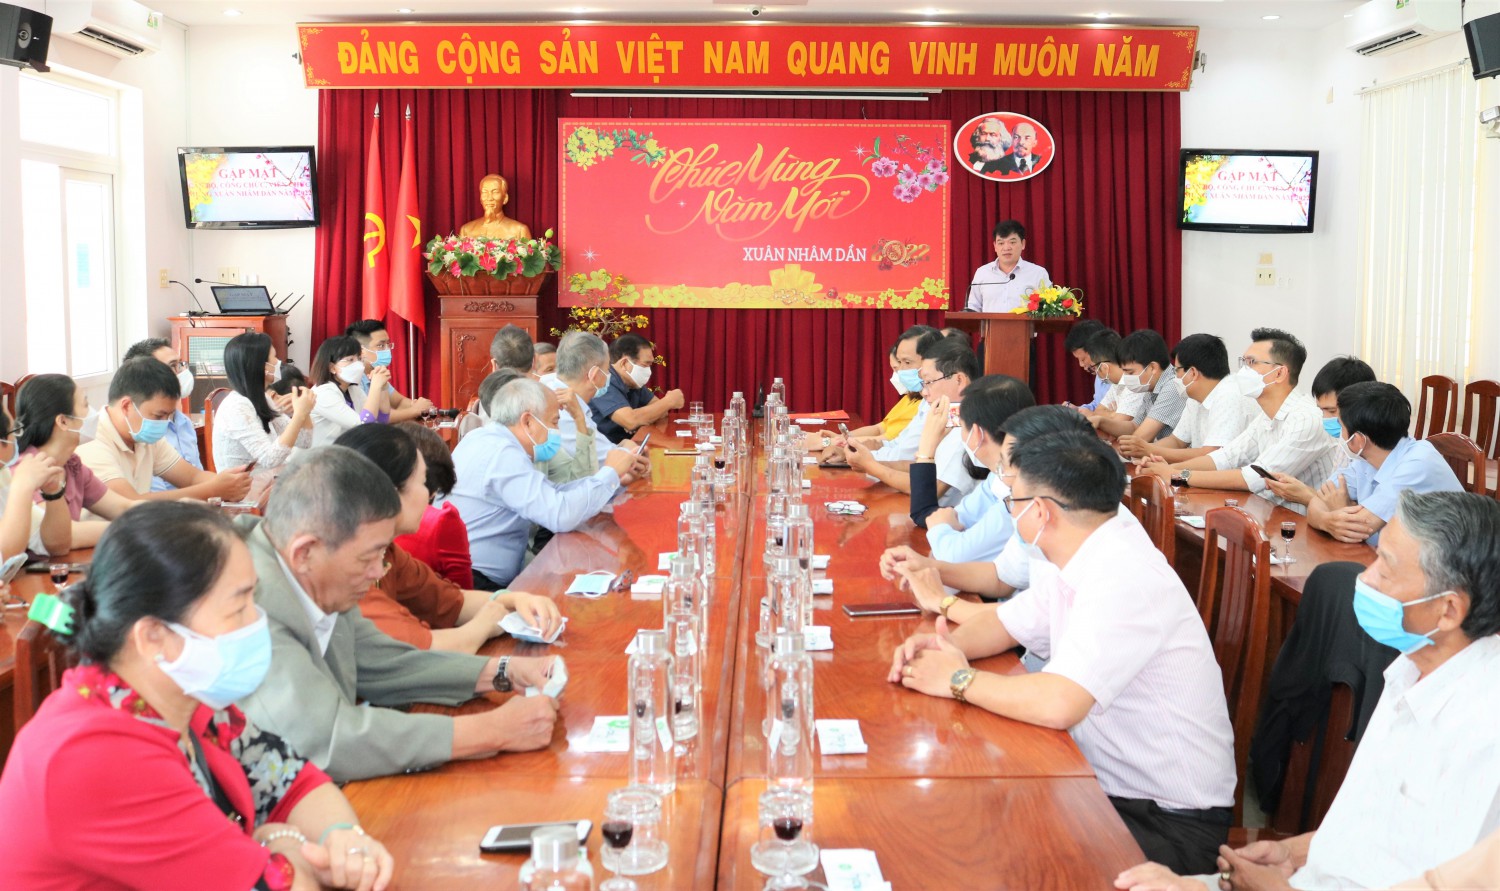 Đồng chí Trịnh Xuân Long, Bí thư Đảng ủy, Phó Giám đốc Sở báo cáo tại buổi gặp mặt